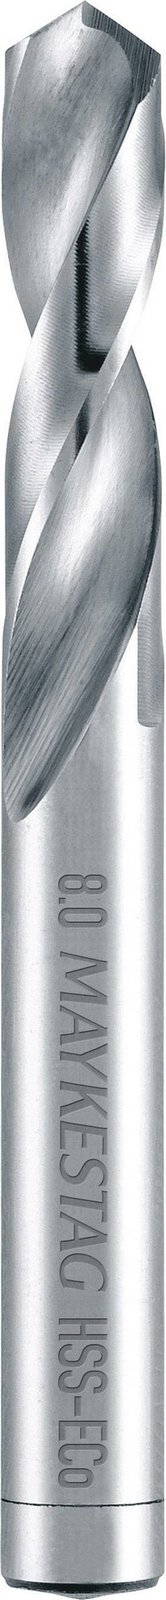 Alpen 92100350100 HSS-E kovový spirálový vrták  3.5 mm Celková délka 52 mm Cobalt DIN 1897 válcová stopka 1 ks